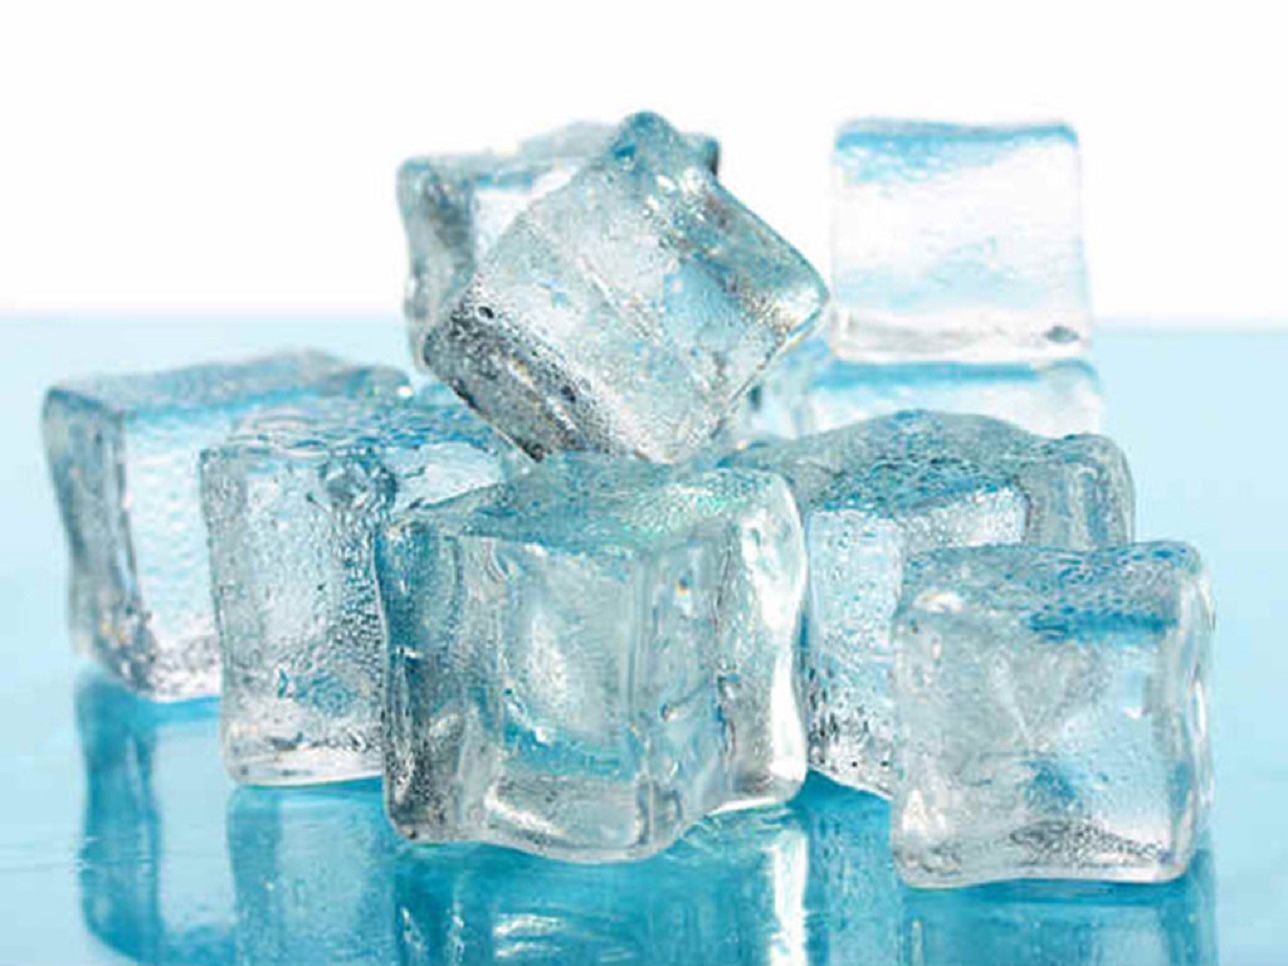 Uống nước ấm có thể giảm nguy cơ đau họng so với uống nước lạnh không?
